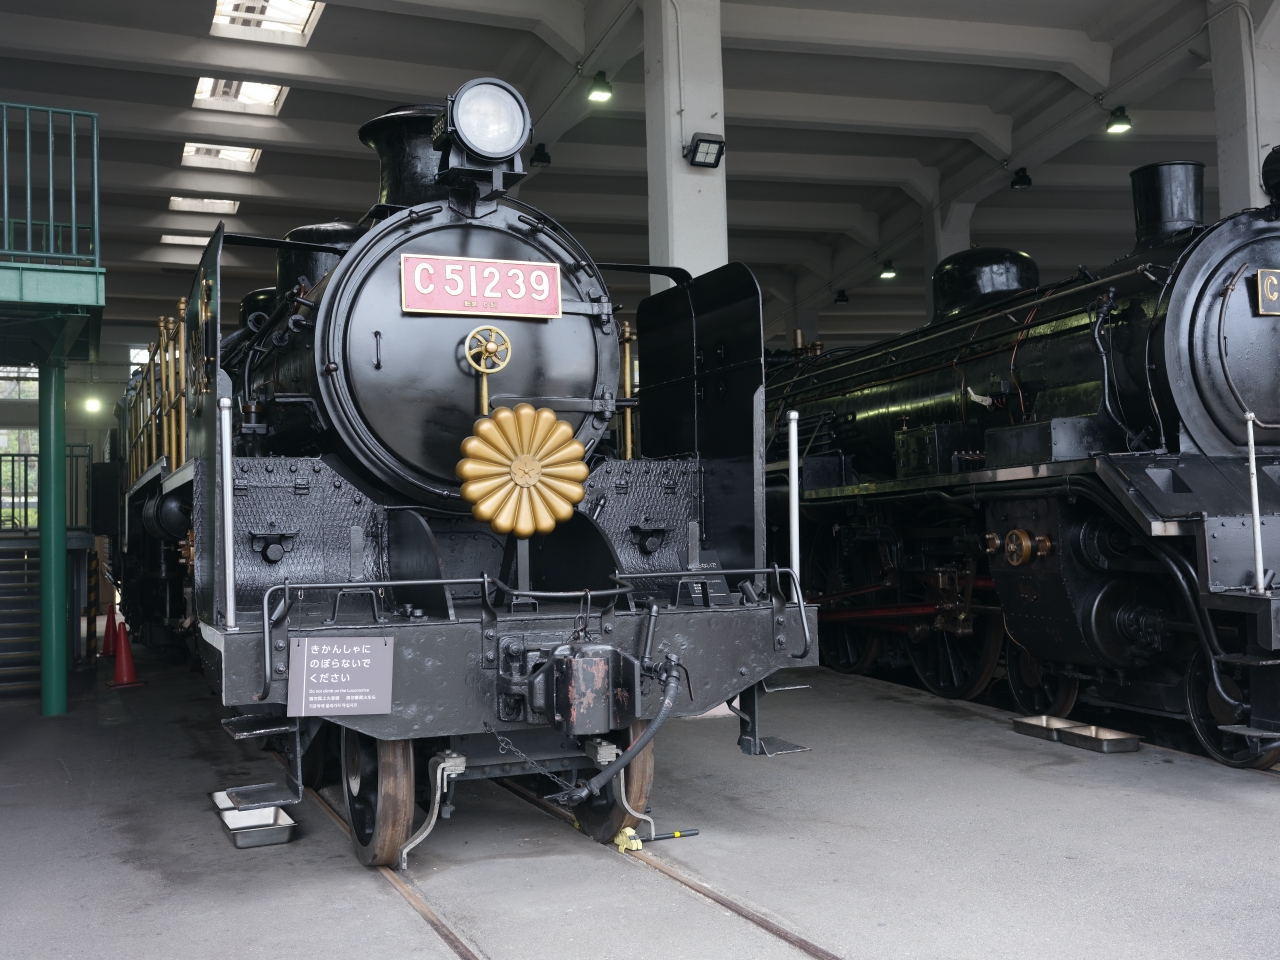 【京都鐵道博物館】鐵路迷必訪推薦、門票、交通景點體驗全攻略 @捲捲頭 ♡ 品味生活